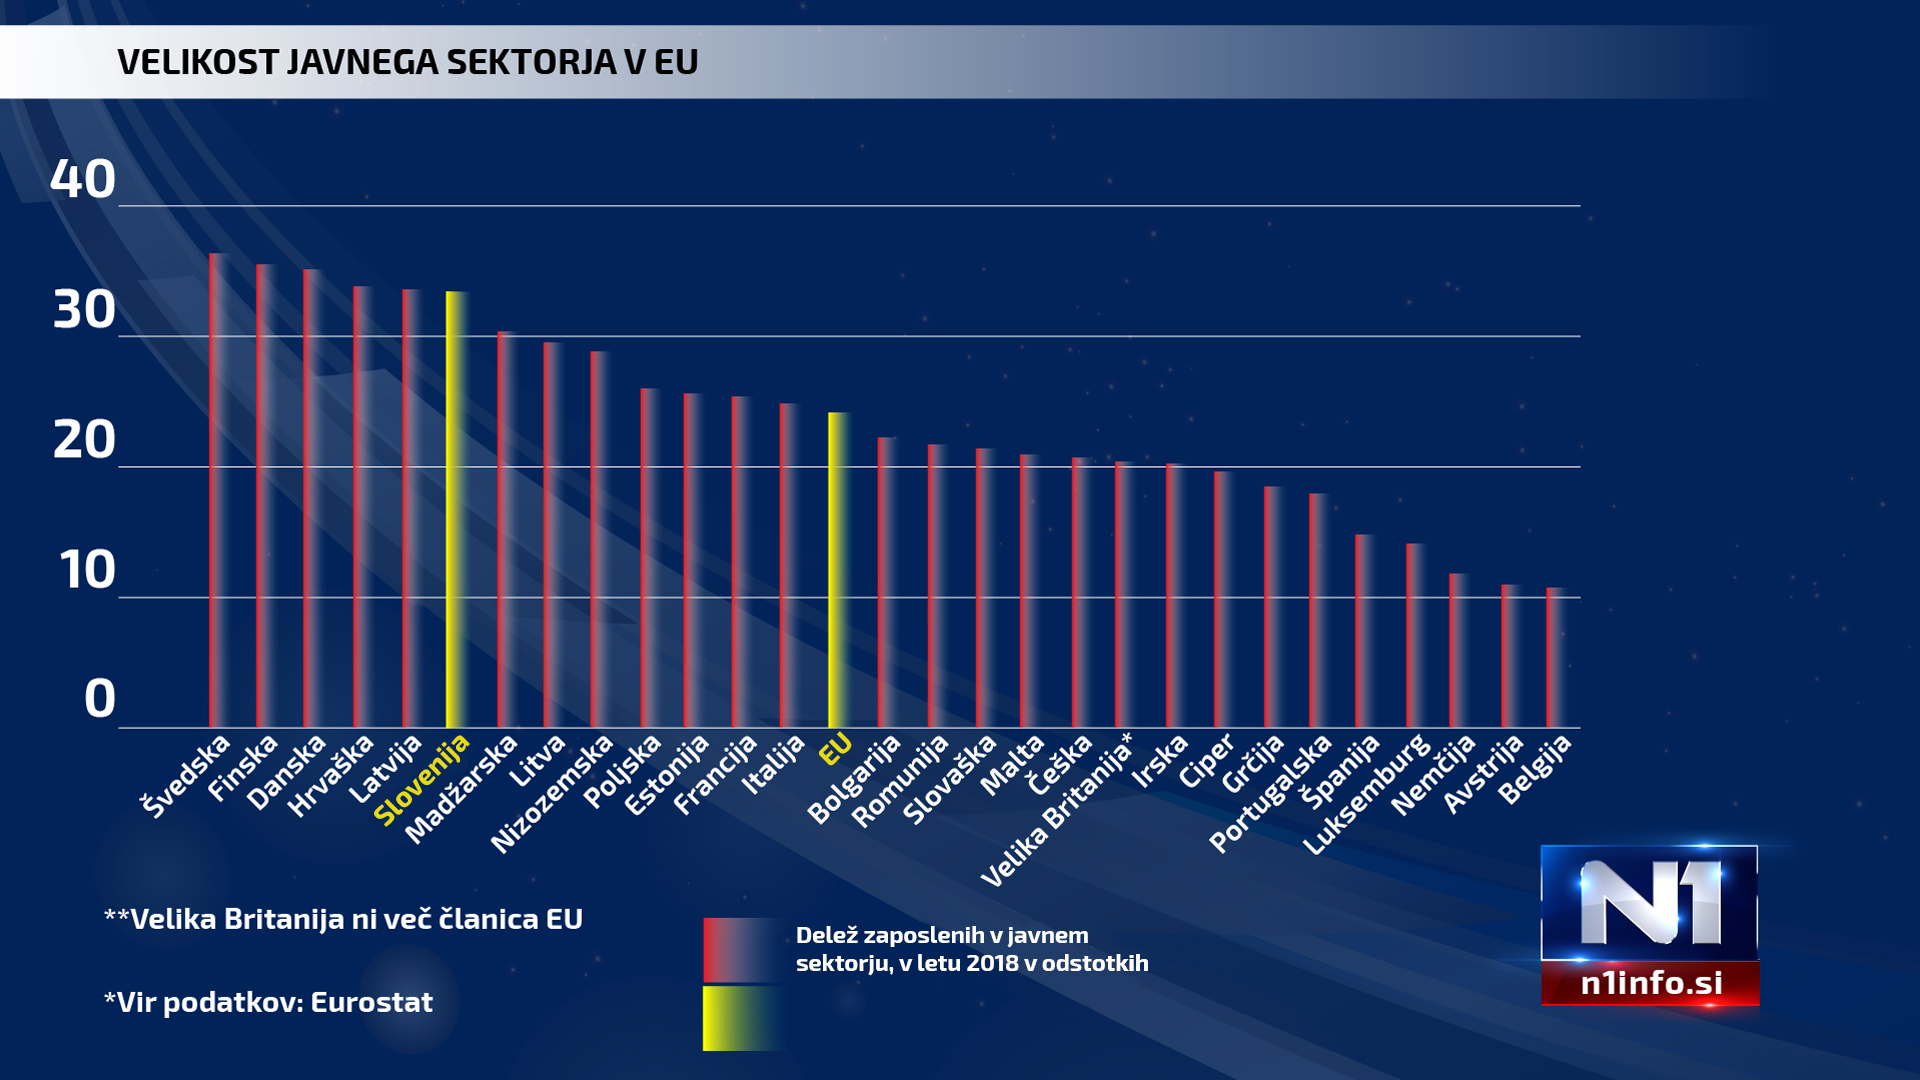 Velikost javnega sektor EU